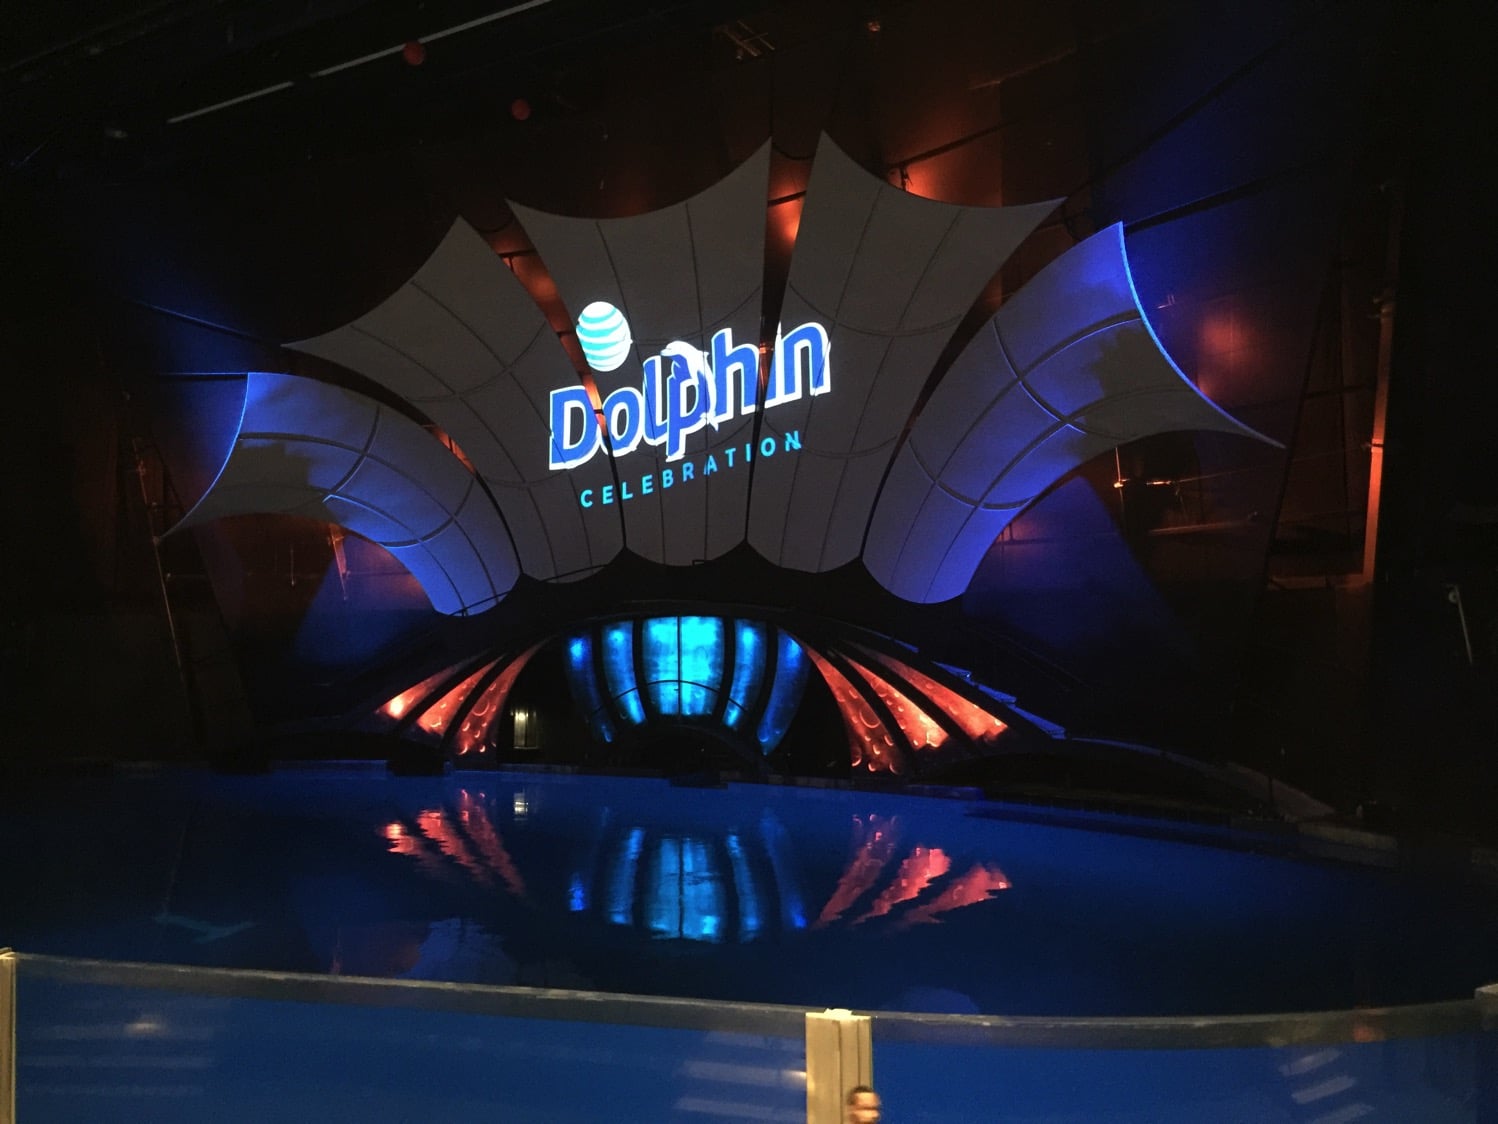 New dolphin show at the Georgia Aquarium